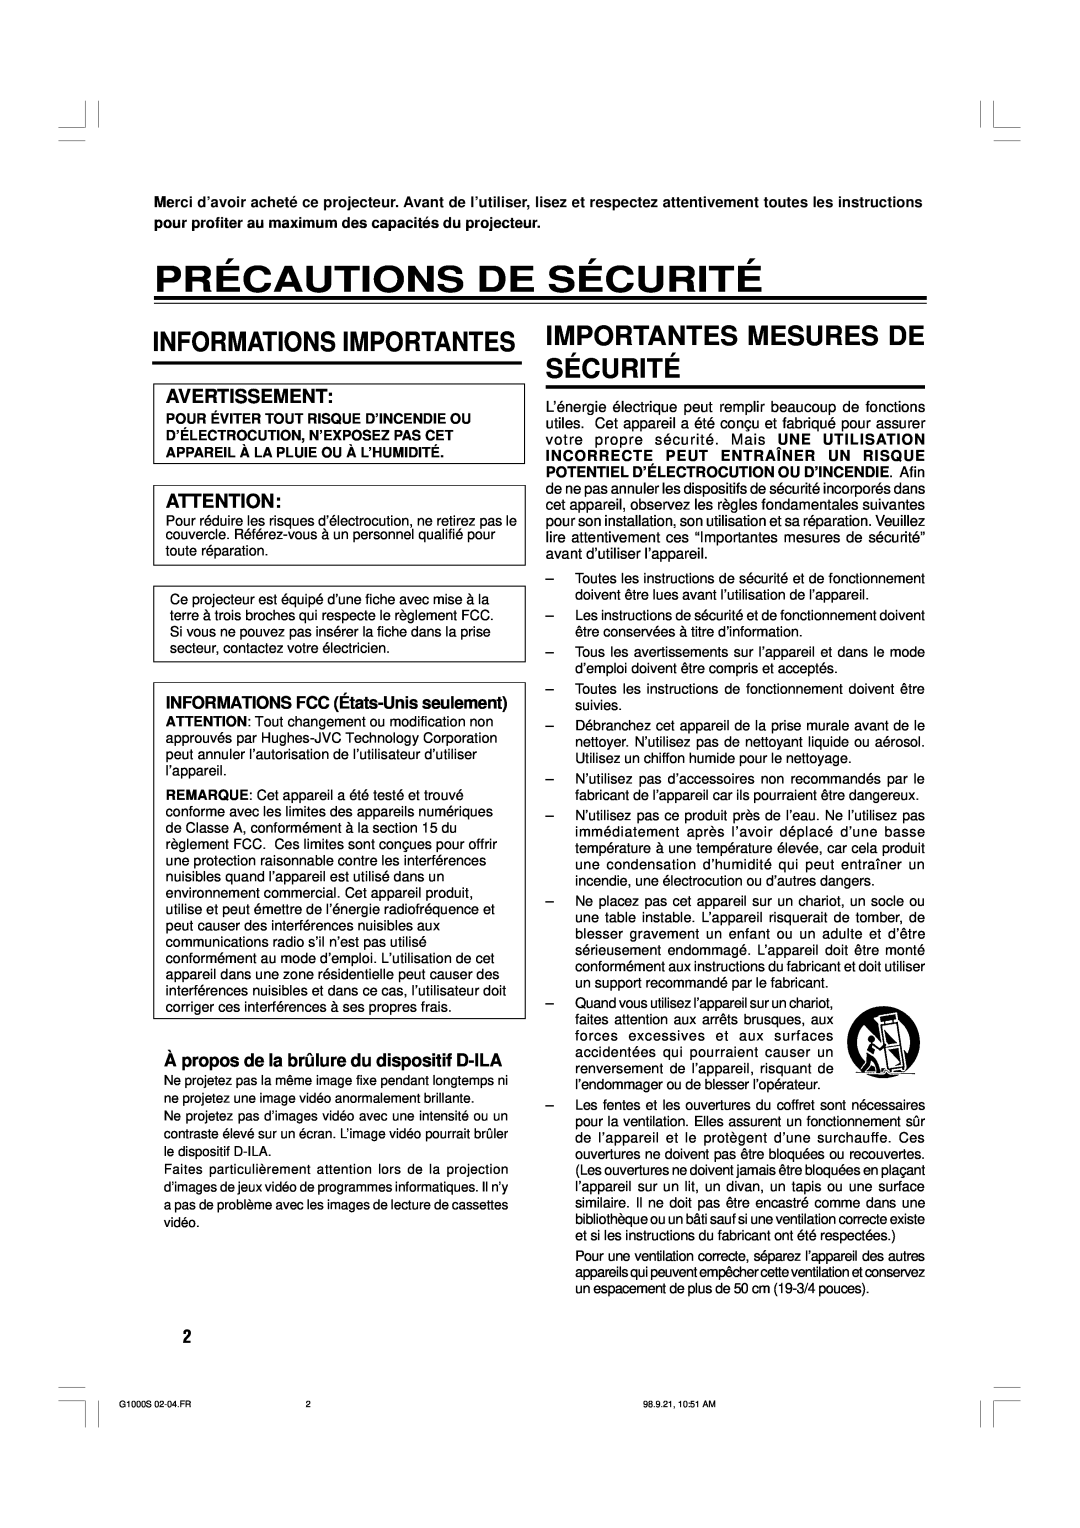 JVC G1000S manual Précautions De Sécurité, Importantes Mesures De Sécurité, Informations Importantes, Avertissement 